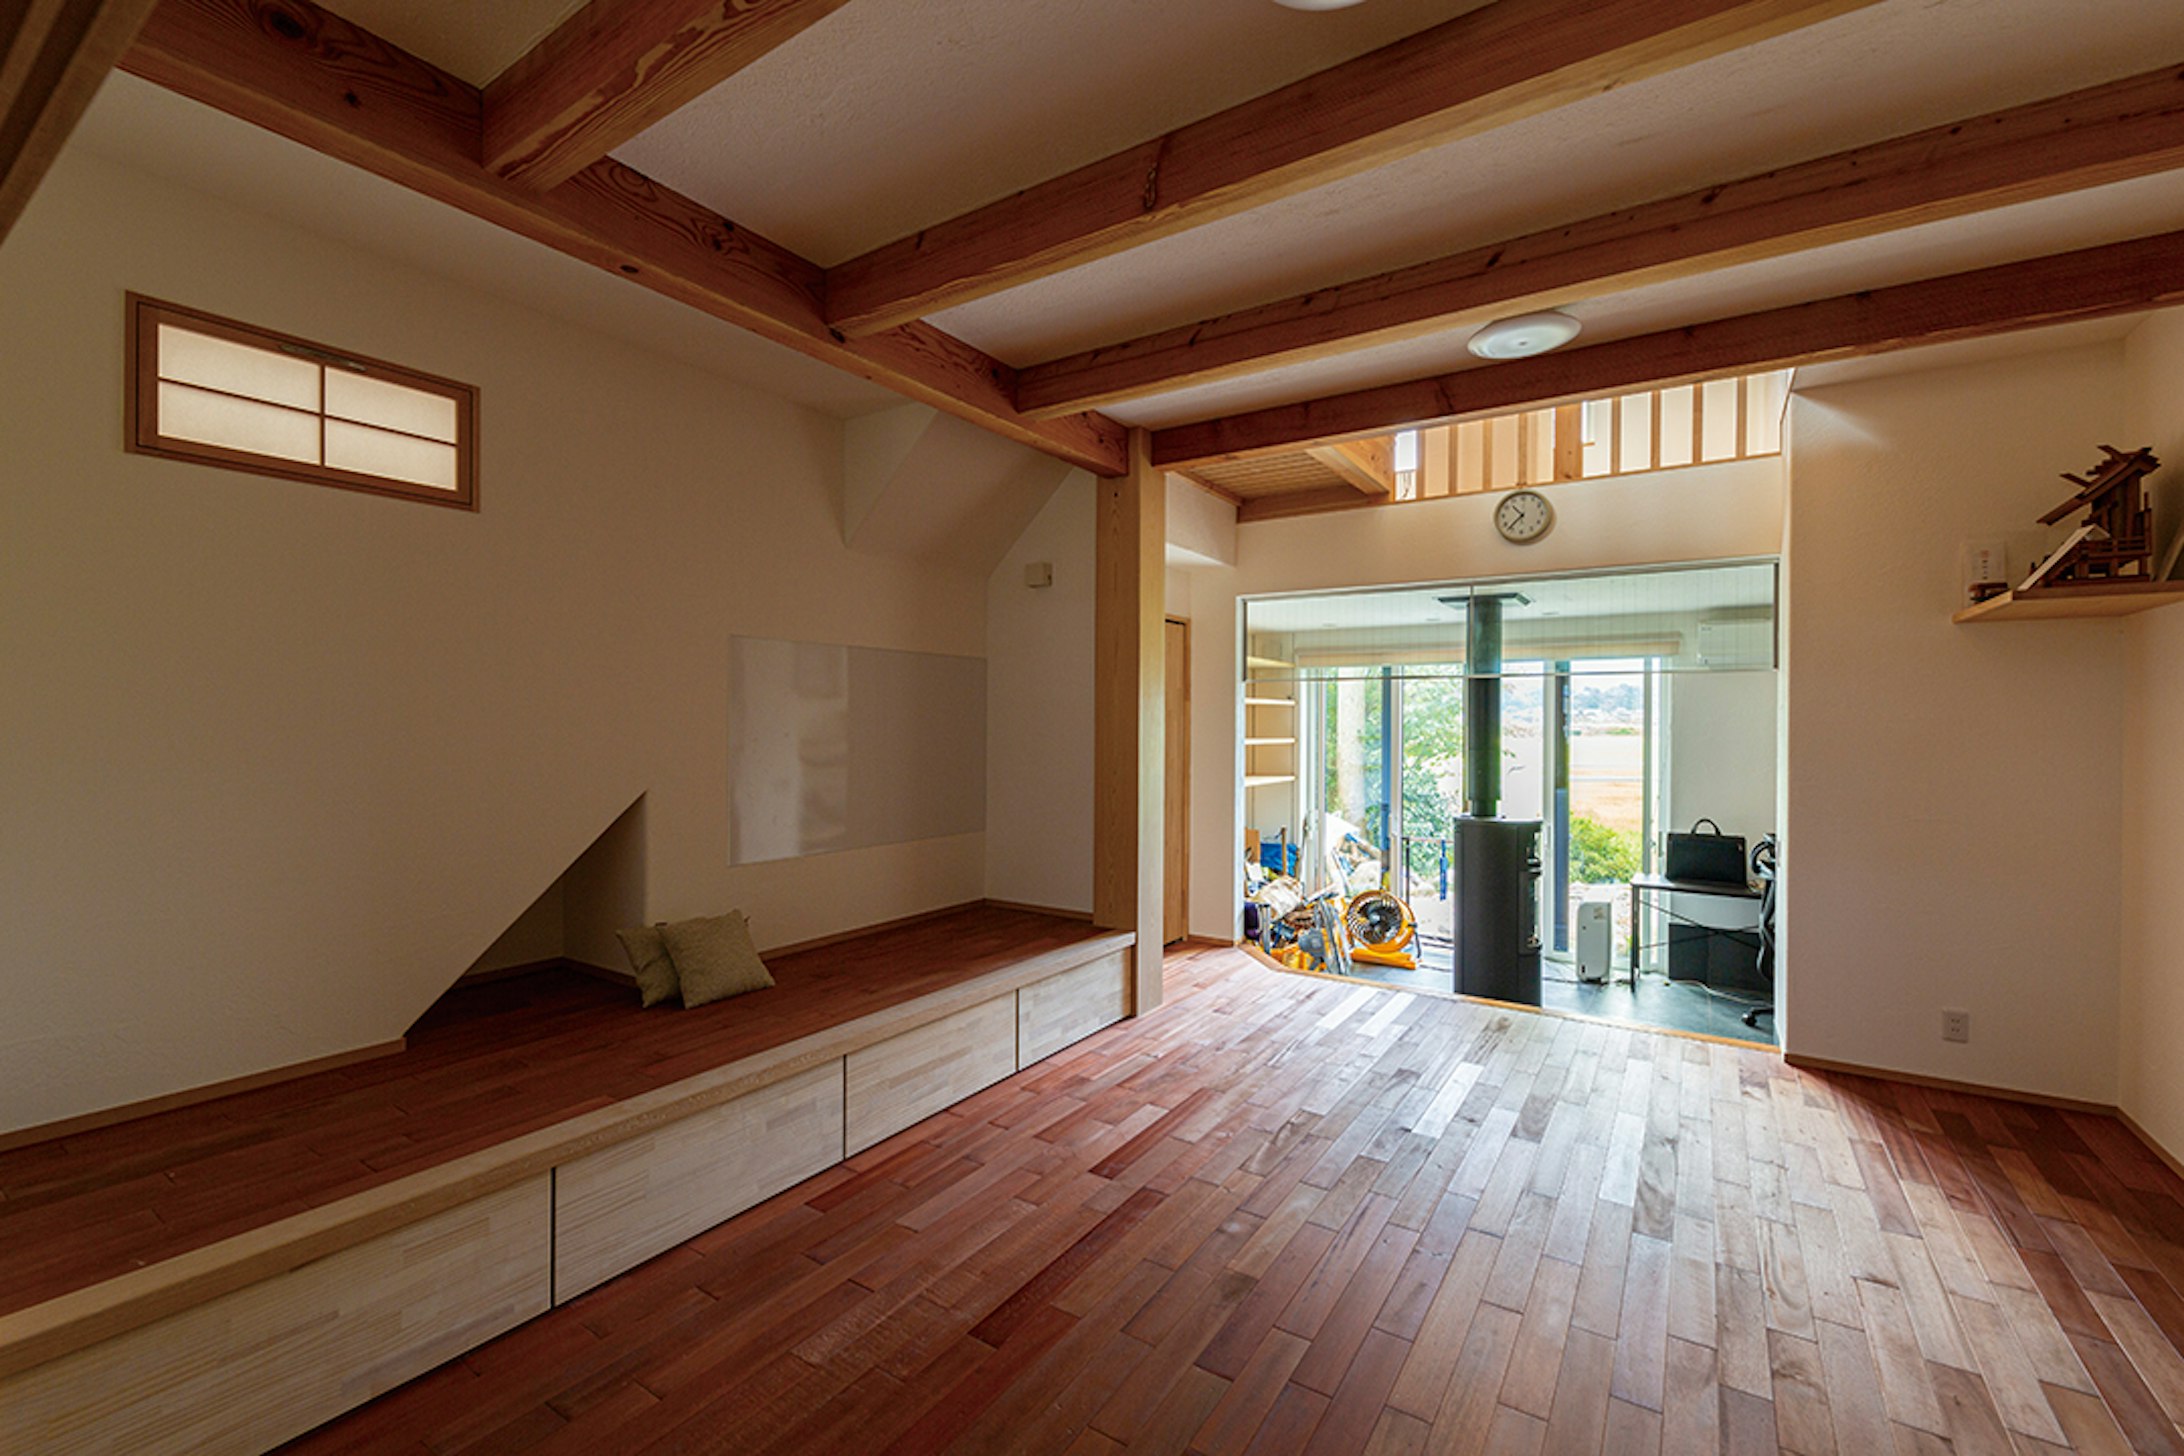 【石川】飛鳥住宅株式会社_山や緑に囲まれた平屋の家本物の自然素材に安心快適